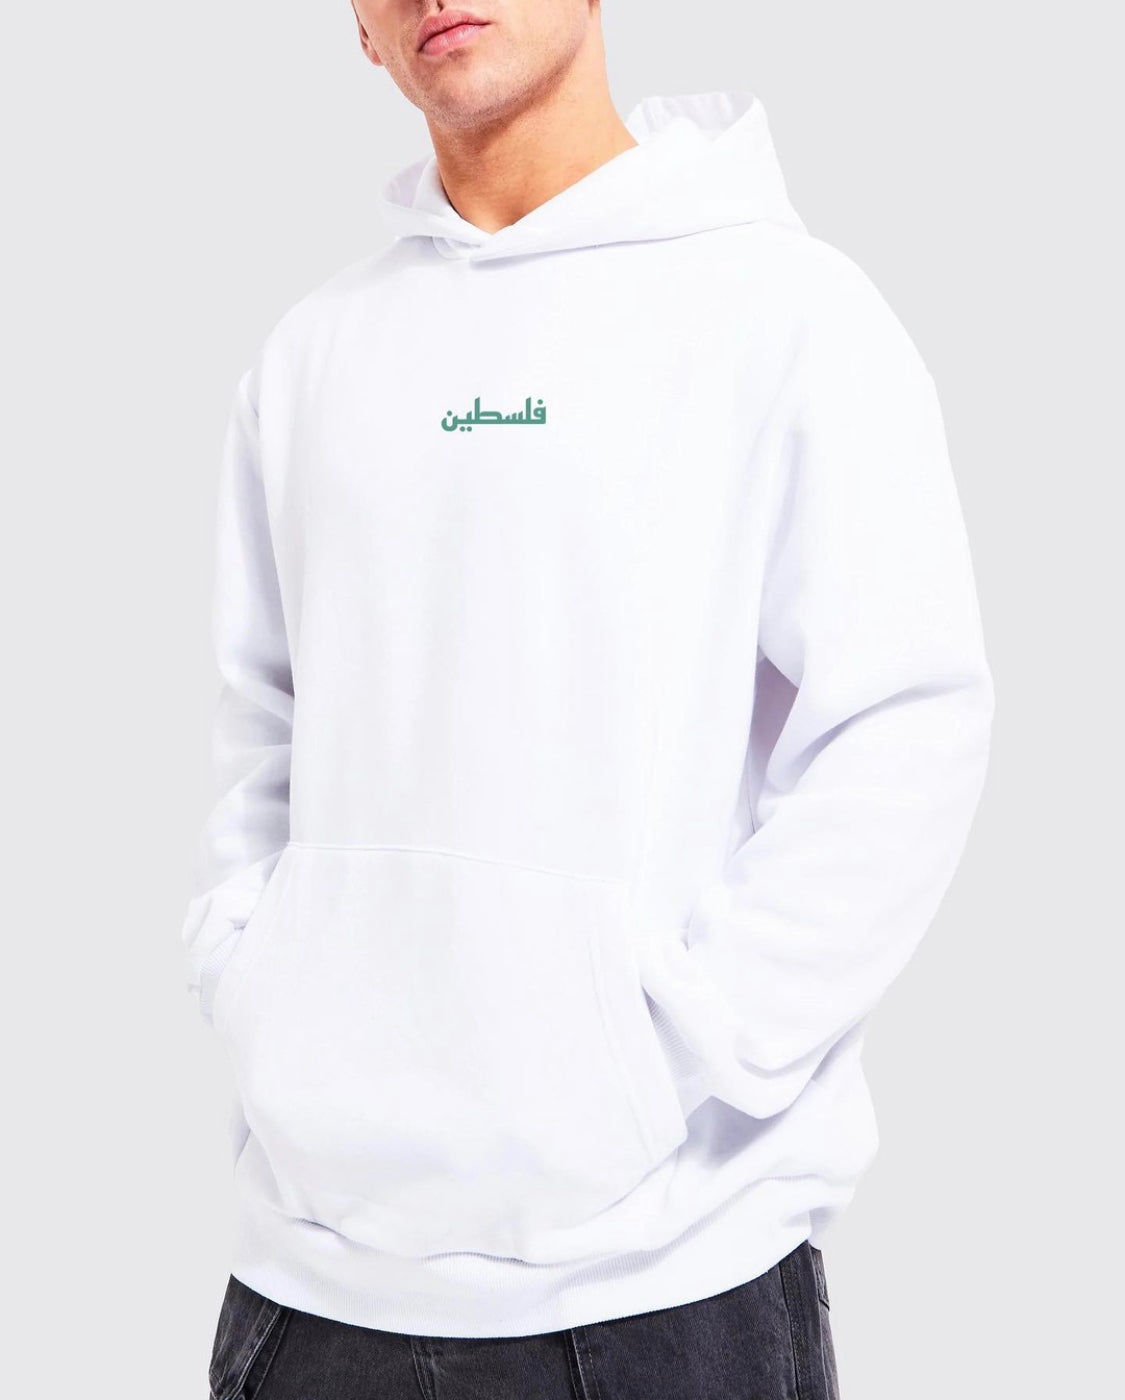 New Palestine hoodie